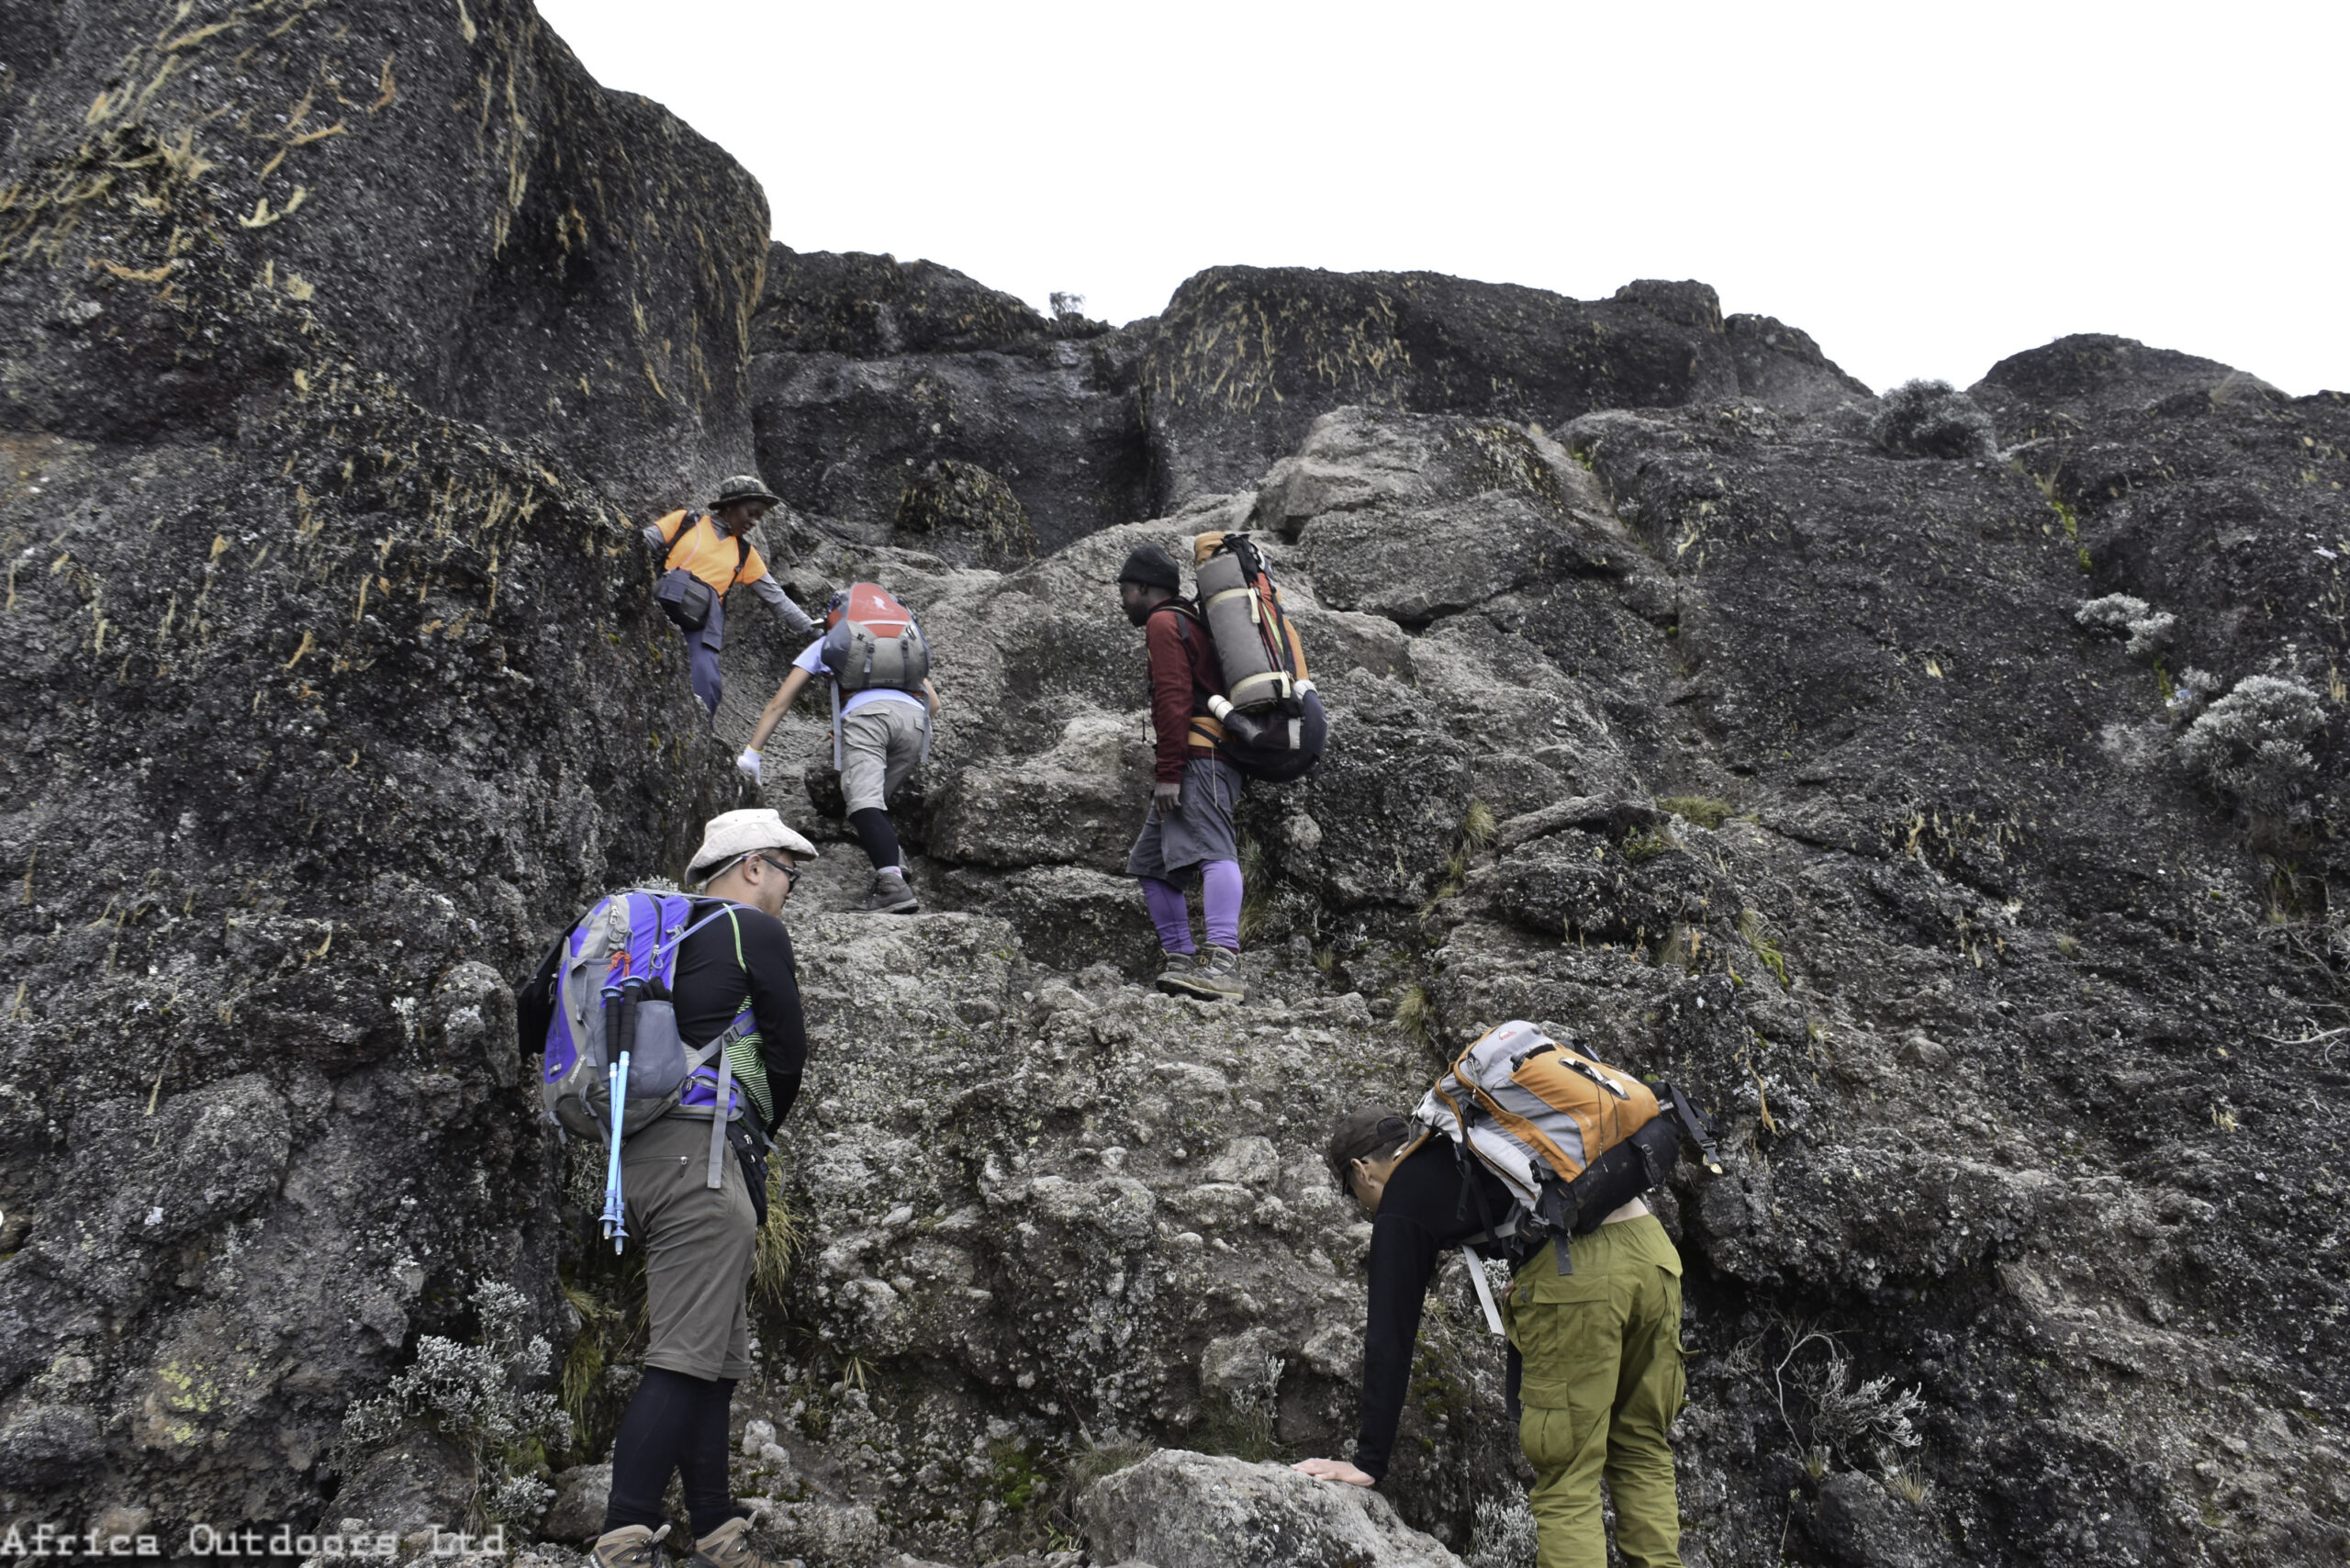 Mount Kilimanjaro Macheme Route & Safari(11 Days)